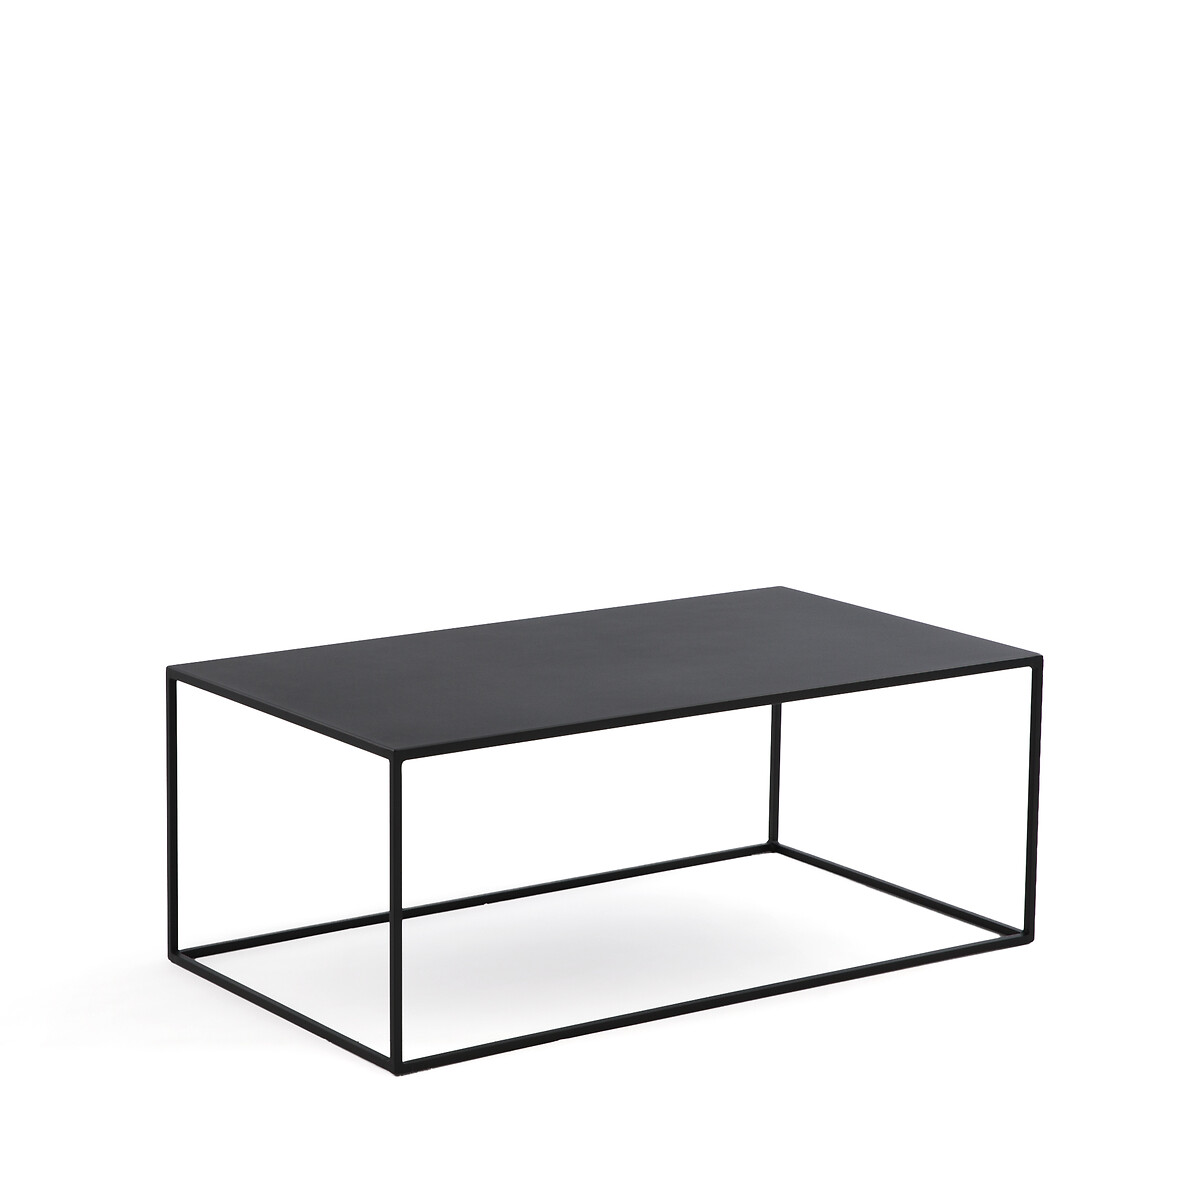 стол журнальный металлический hiba единый размер черный Стол журнальный ограничитель дивана из стали Hiba единый размер черный